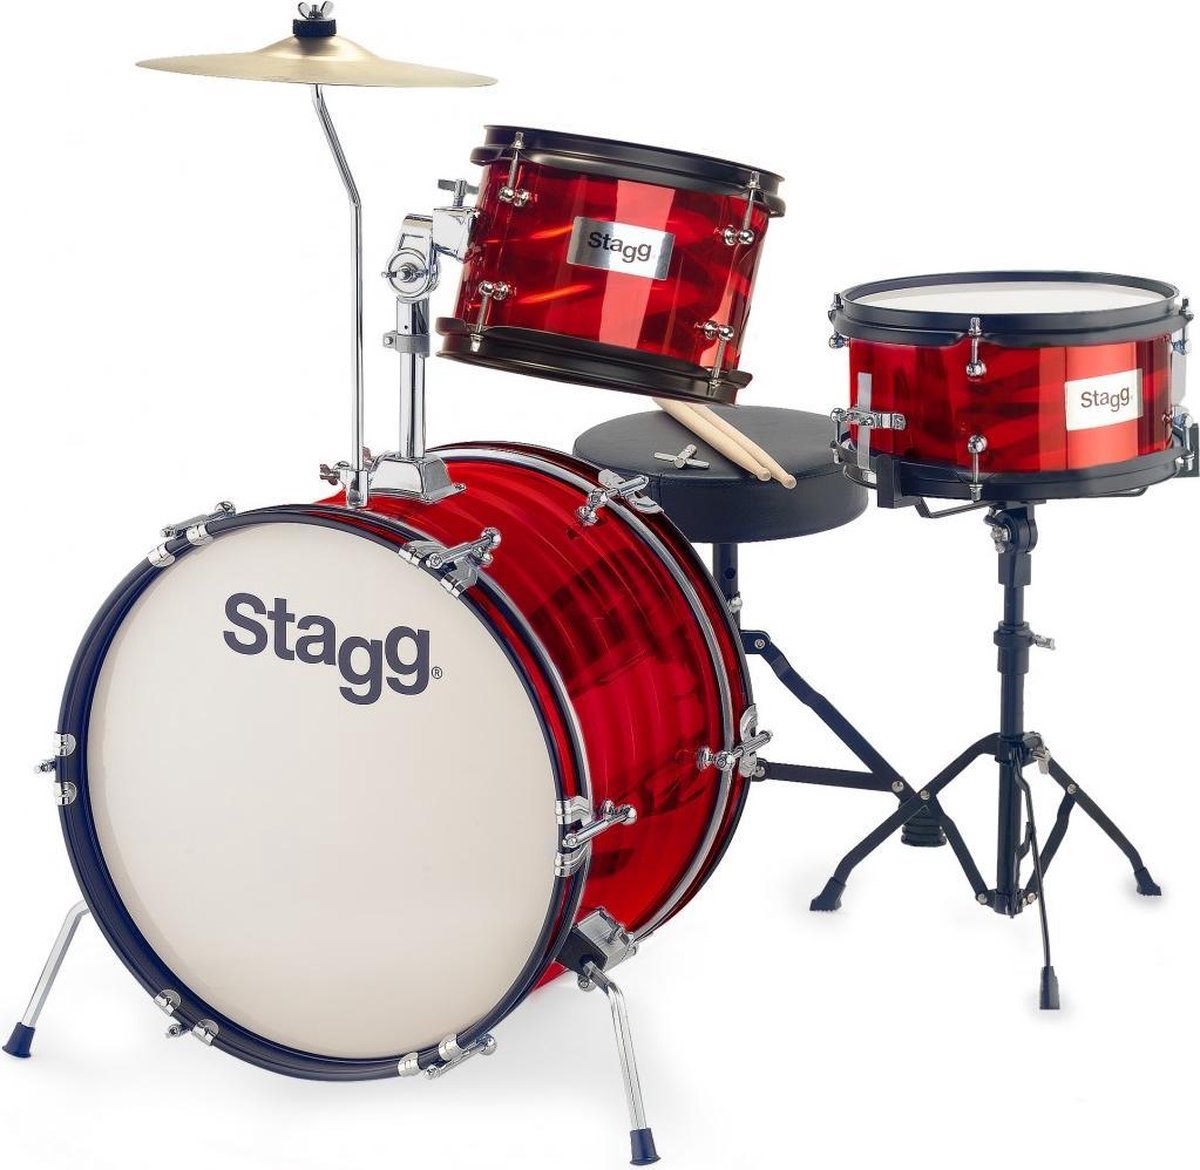 Stagg TIM JR 3/16B RD 3-delig junior drumset 16" | bol